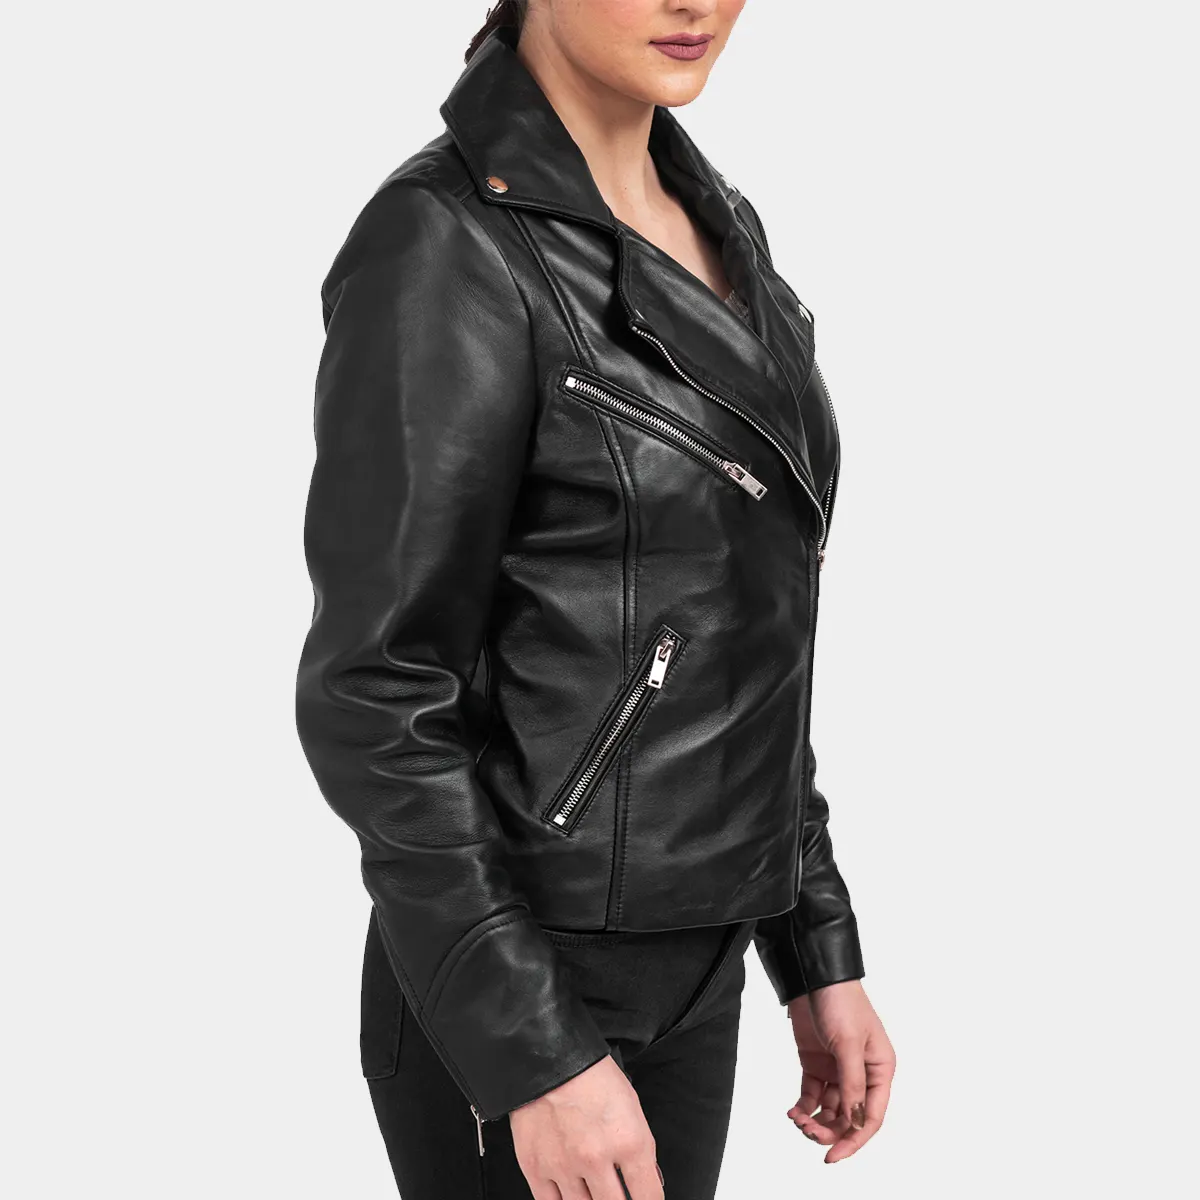 Biker leather jacket women